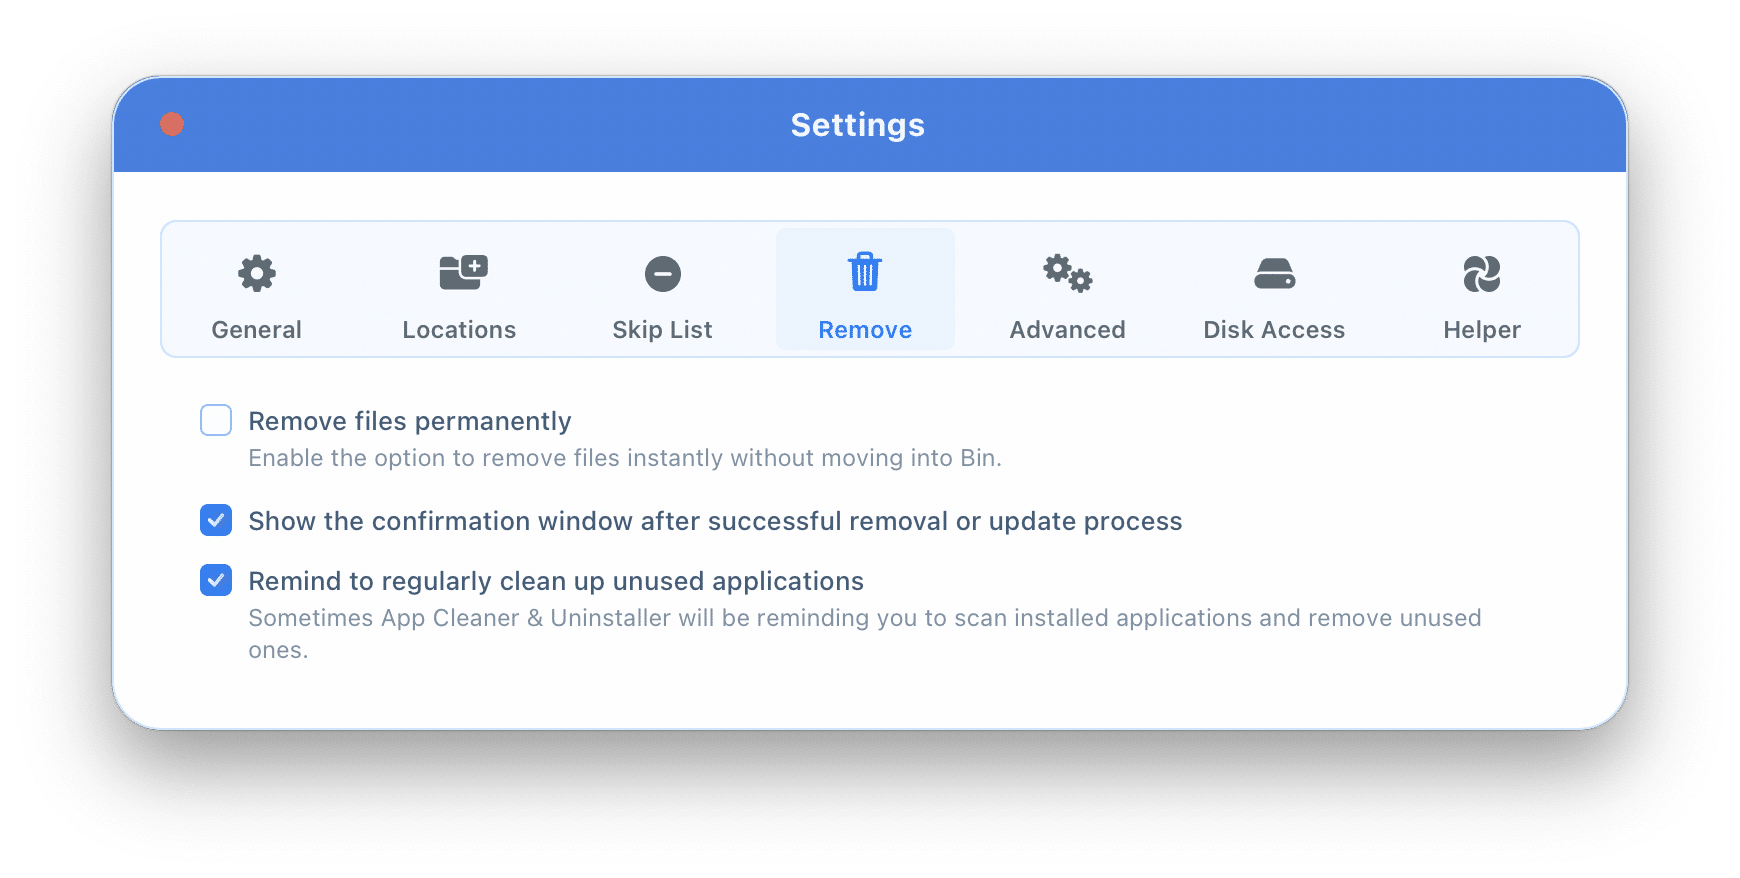 Removal settings in App Cleaner & Uninstaller